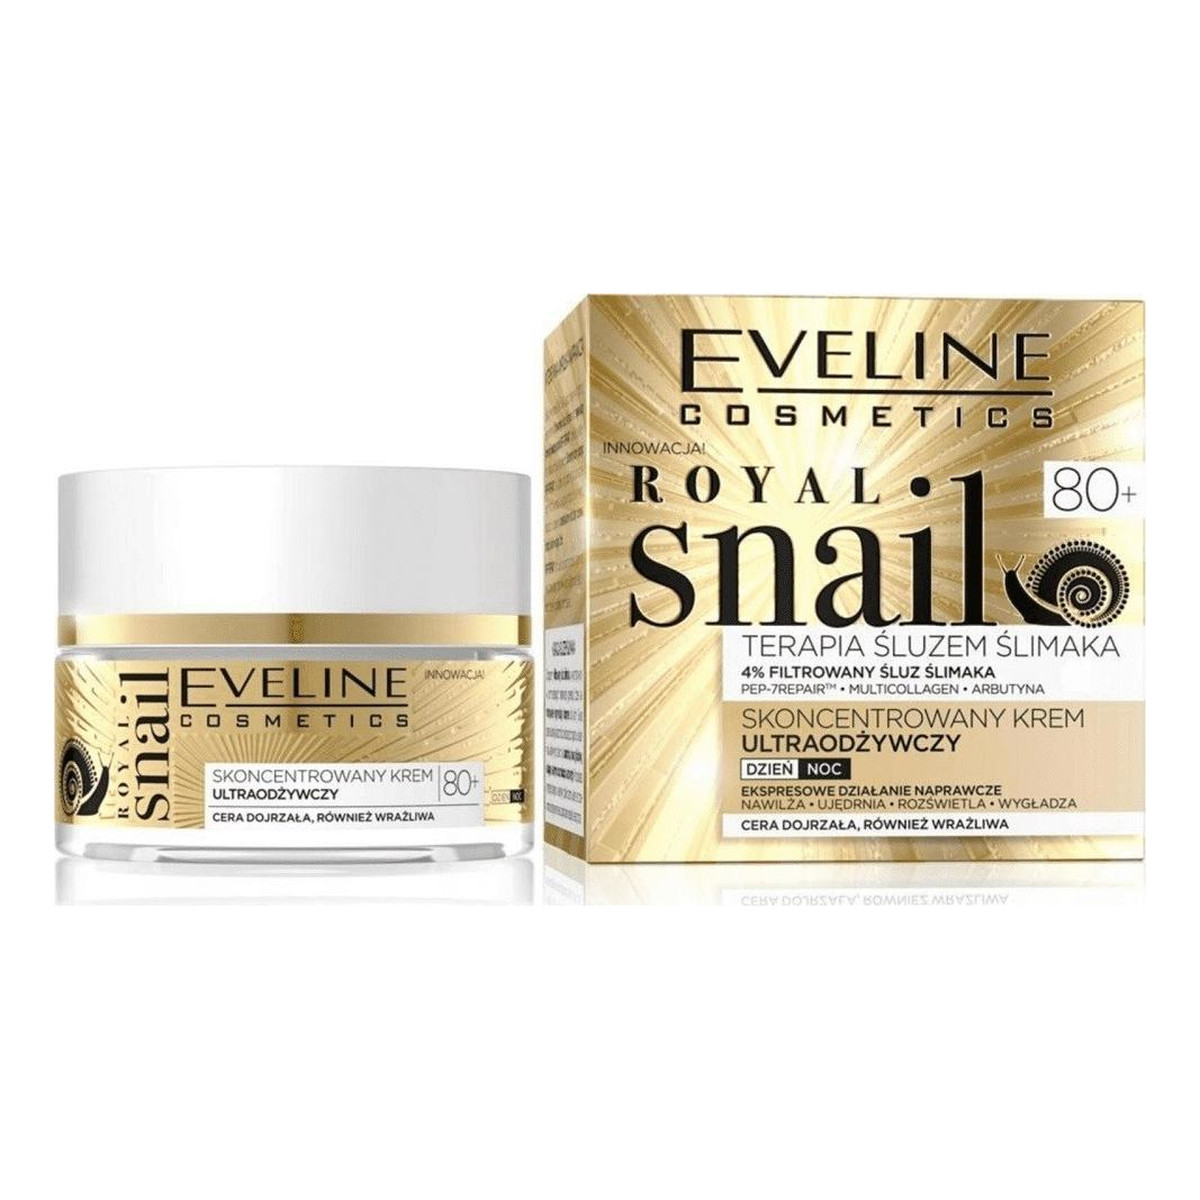 Eveline Royal Snail Skoncentrowany krem ultraodżywczy na dzień i na noc 80+ 50ml